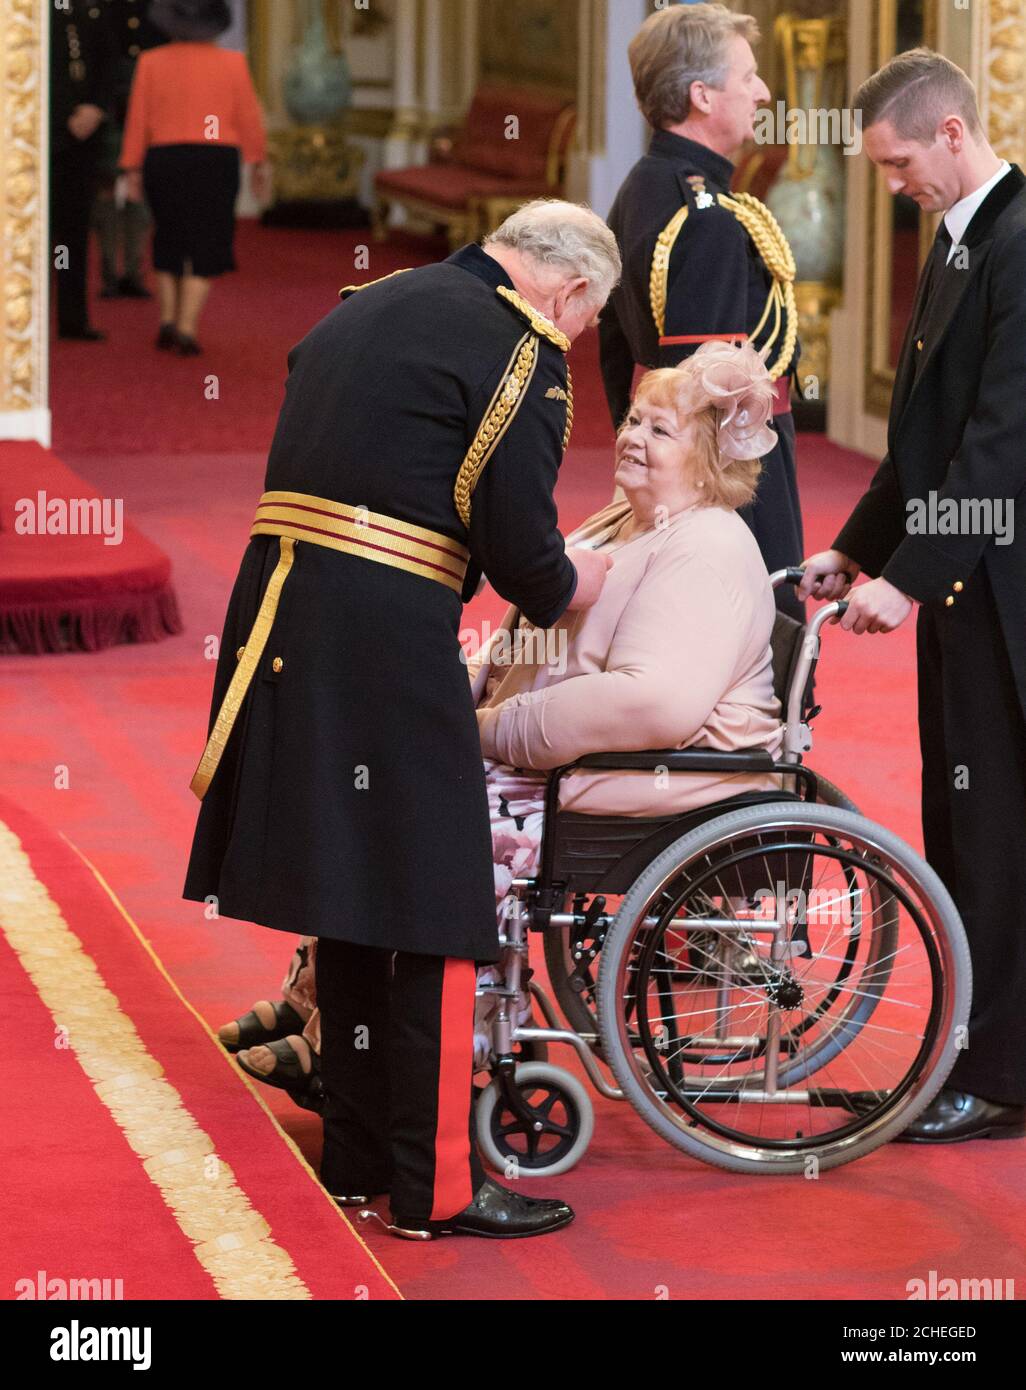 Madame Kathleen COE de Burntwood est faite une MBE (membre de l'ordre de l'Empire britannique) par le Prince de Galles à Buckingham Palace. Banque D'Images